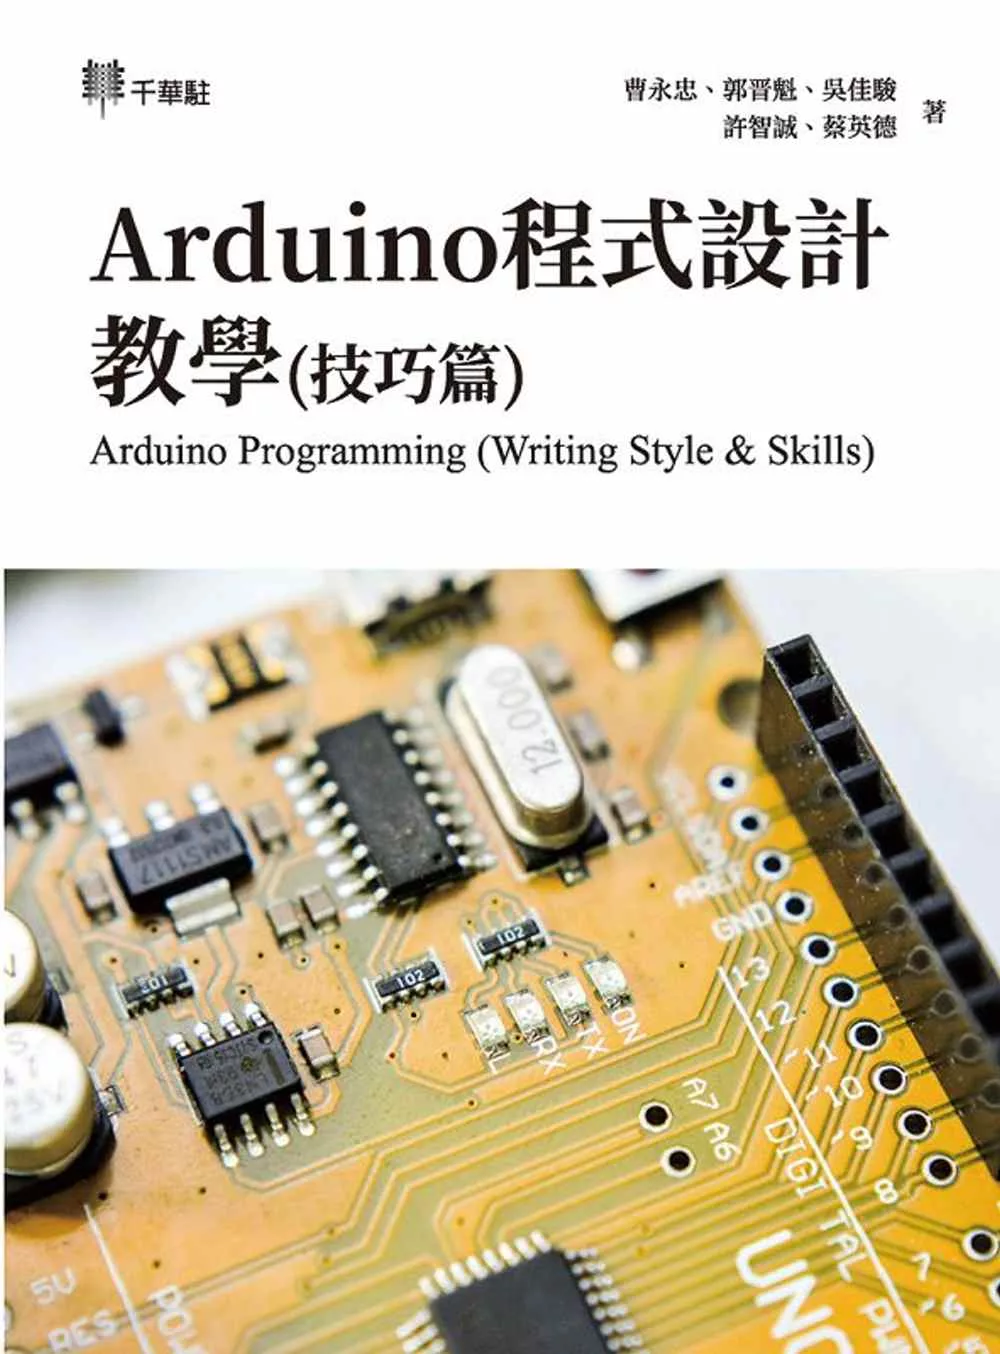 博客來 Arduino程式設計教學 技巧篇